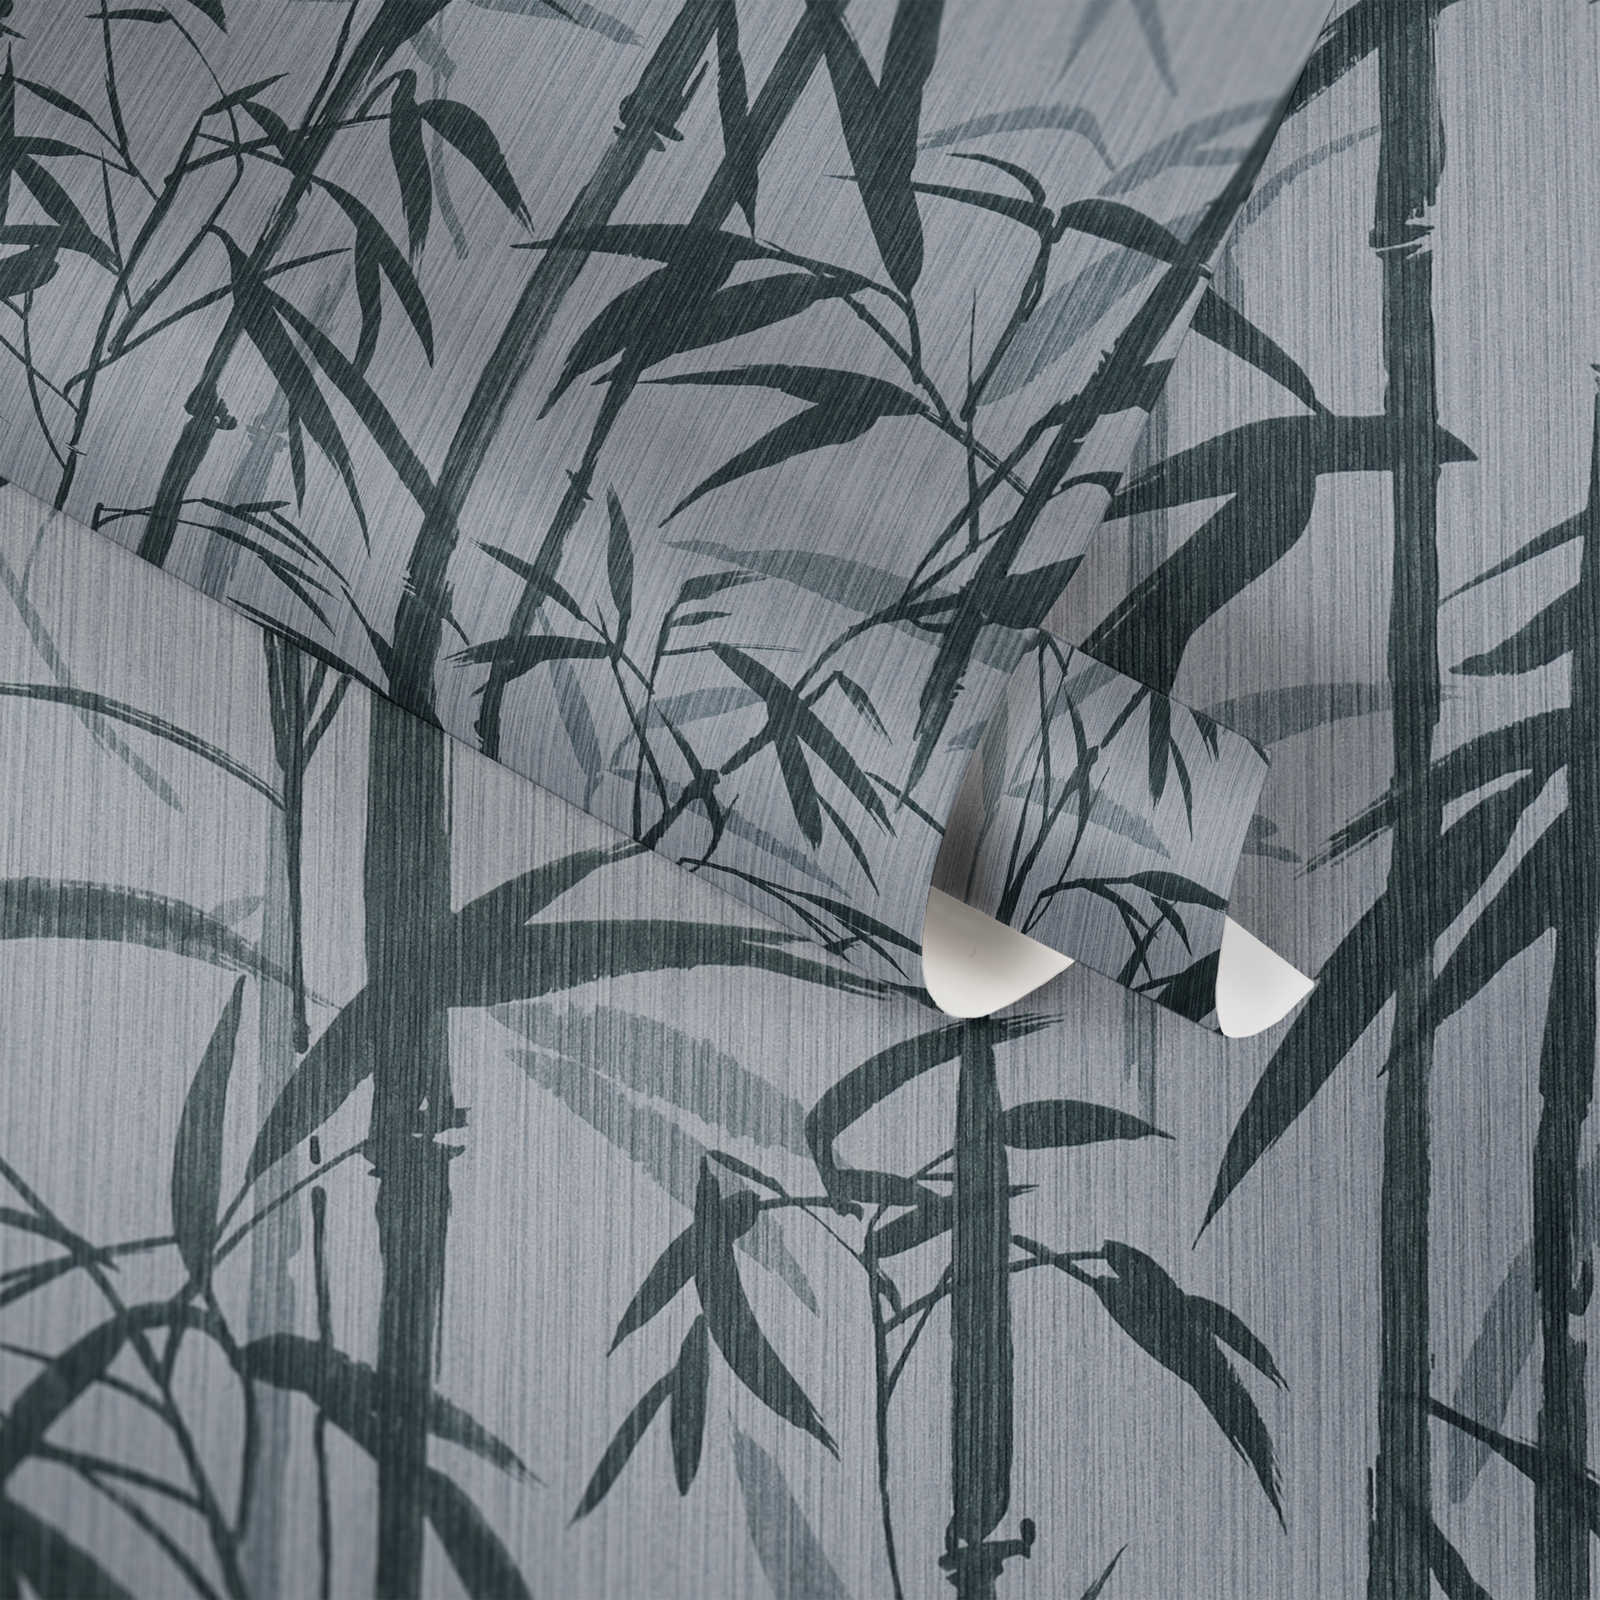             MICHALSKY vliesbehang natuurlijk bamboepatroon - grijs, zwart
        